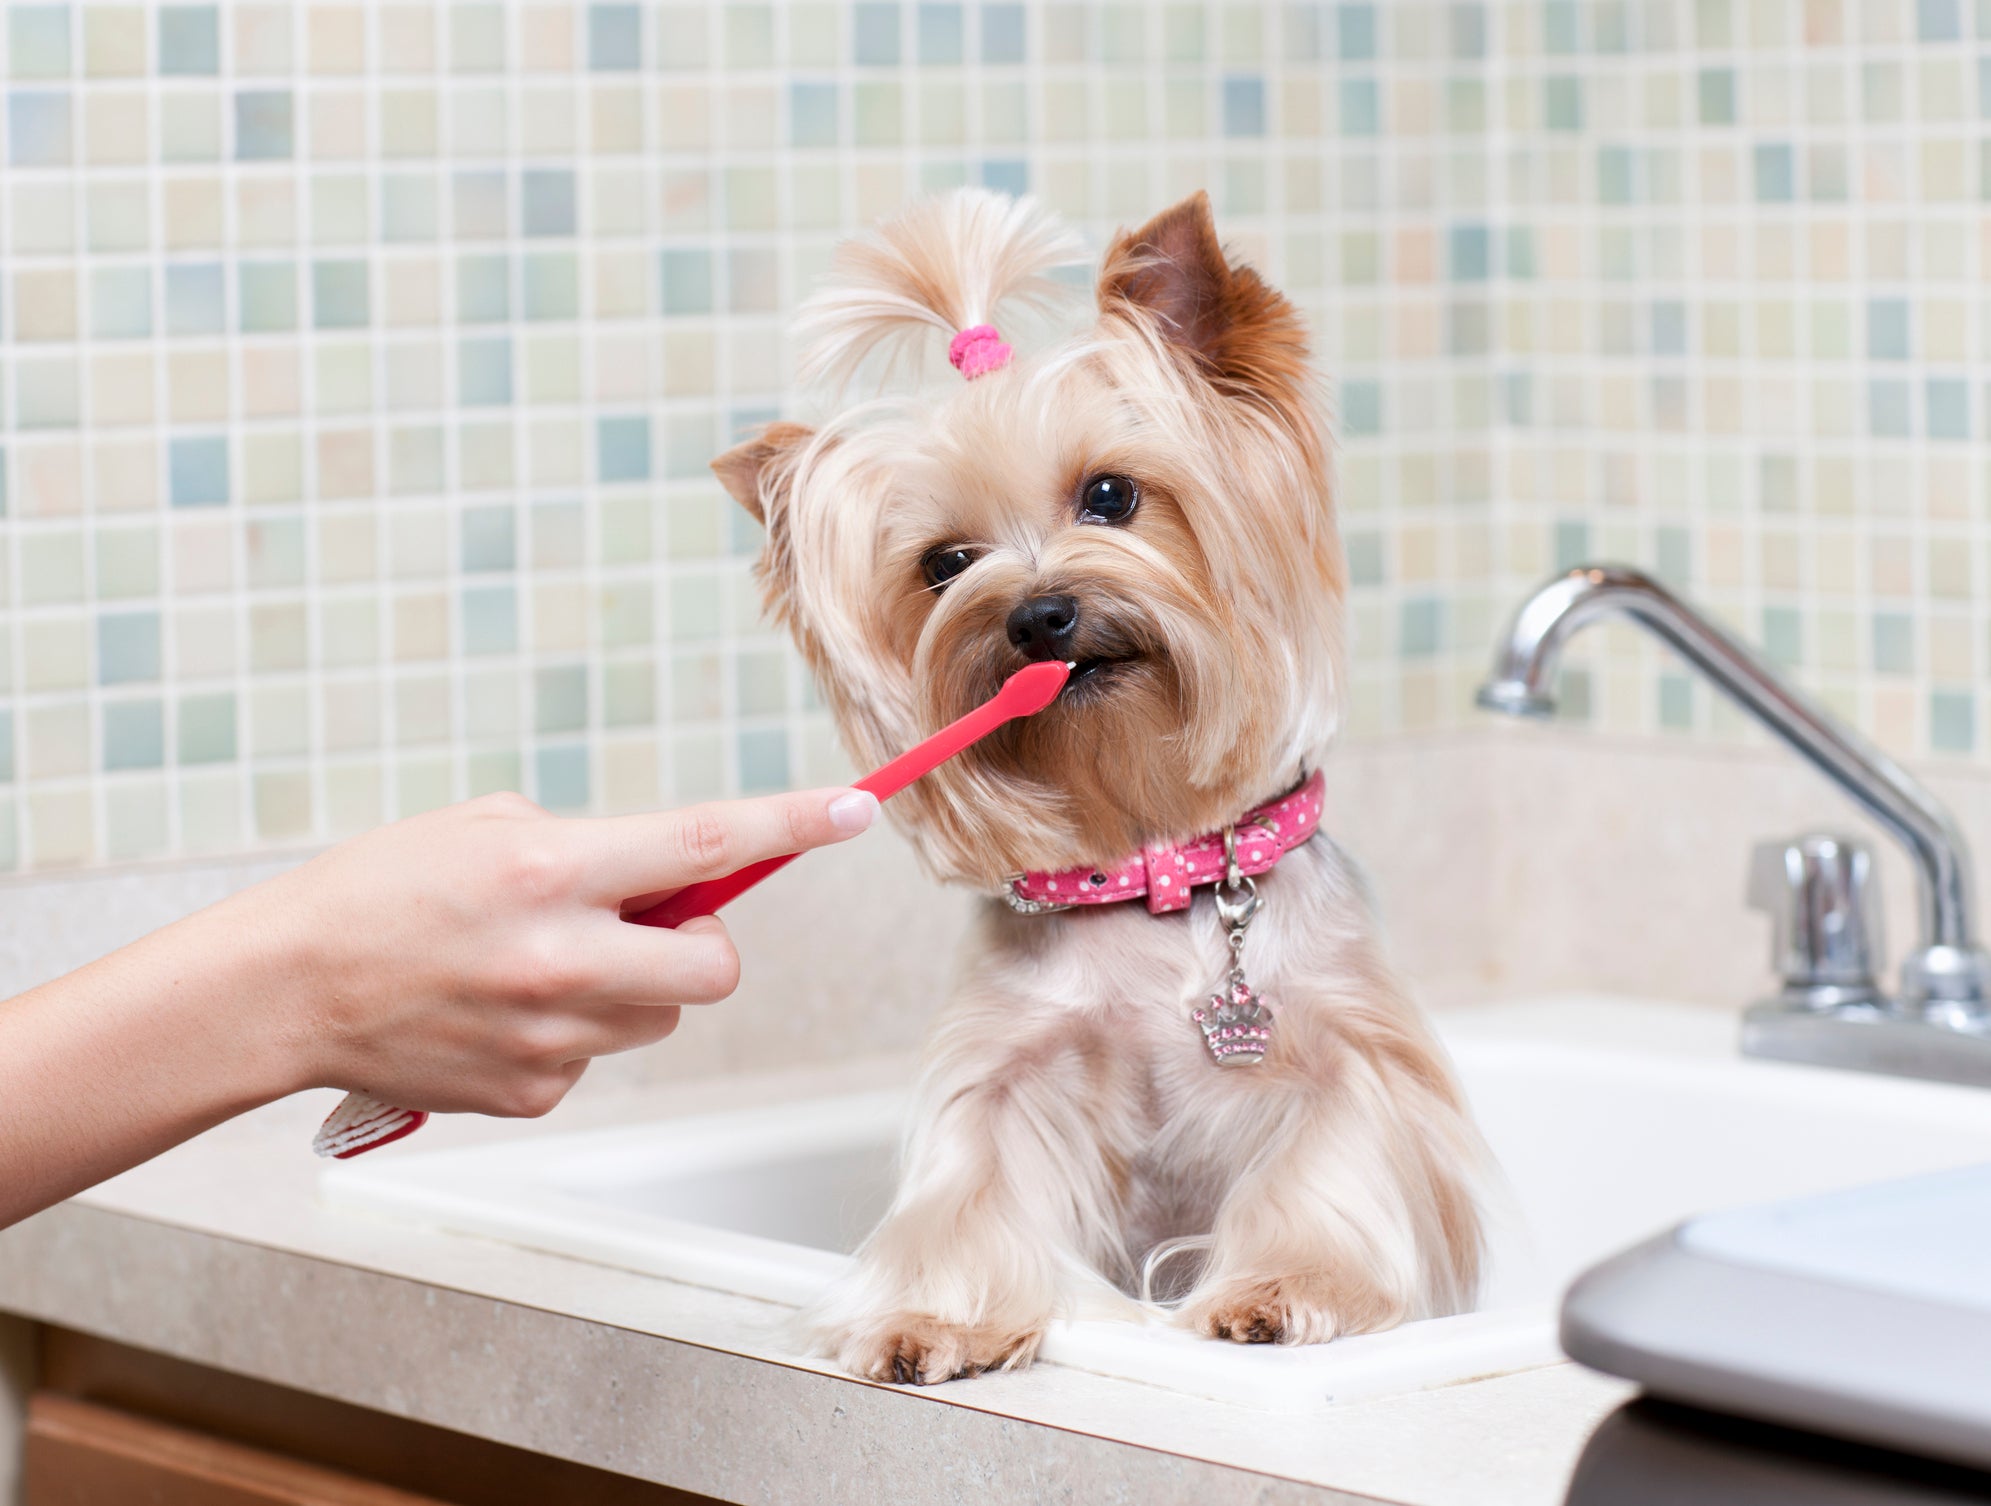 Tutora escovando os dentes de sua cadelinha no banheiro